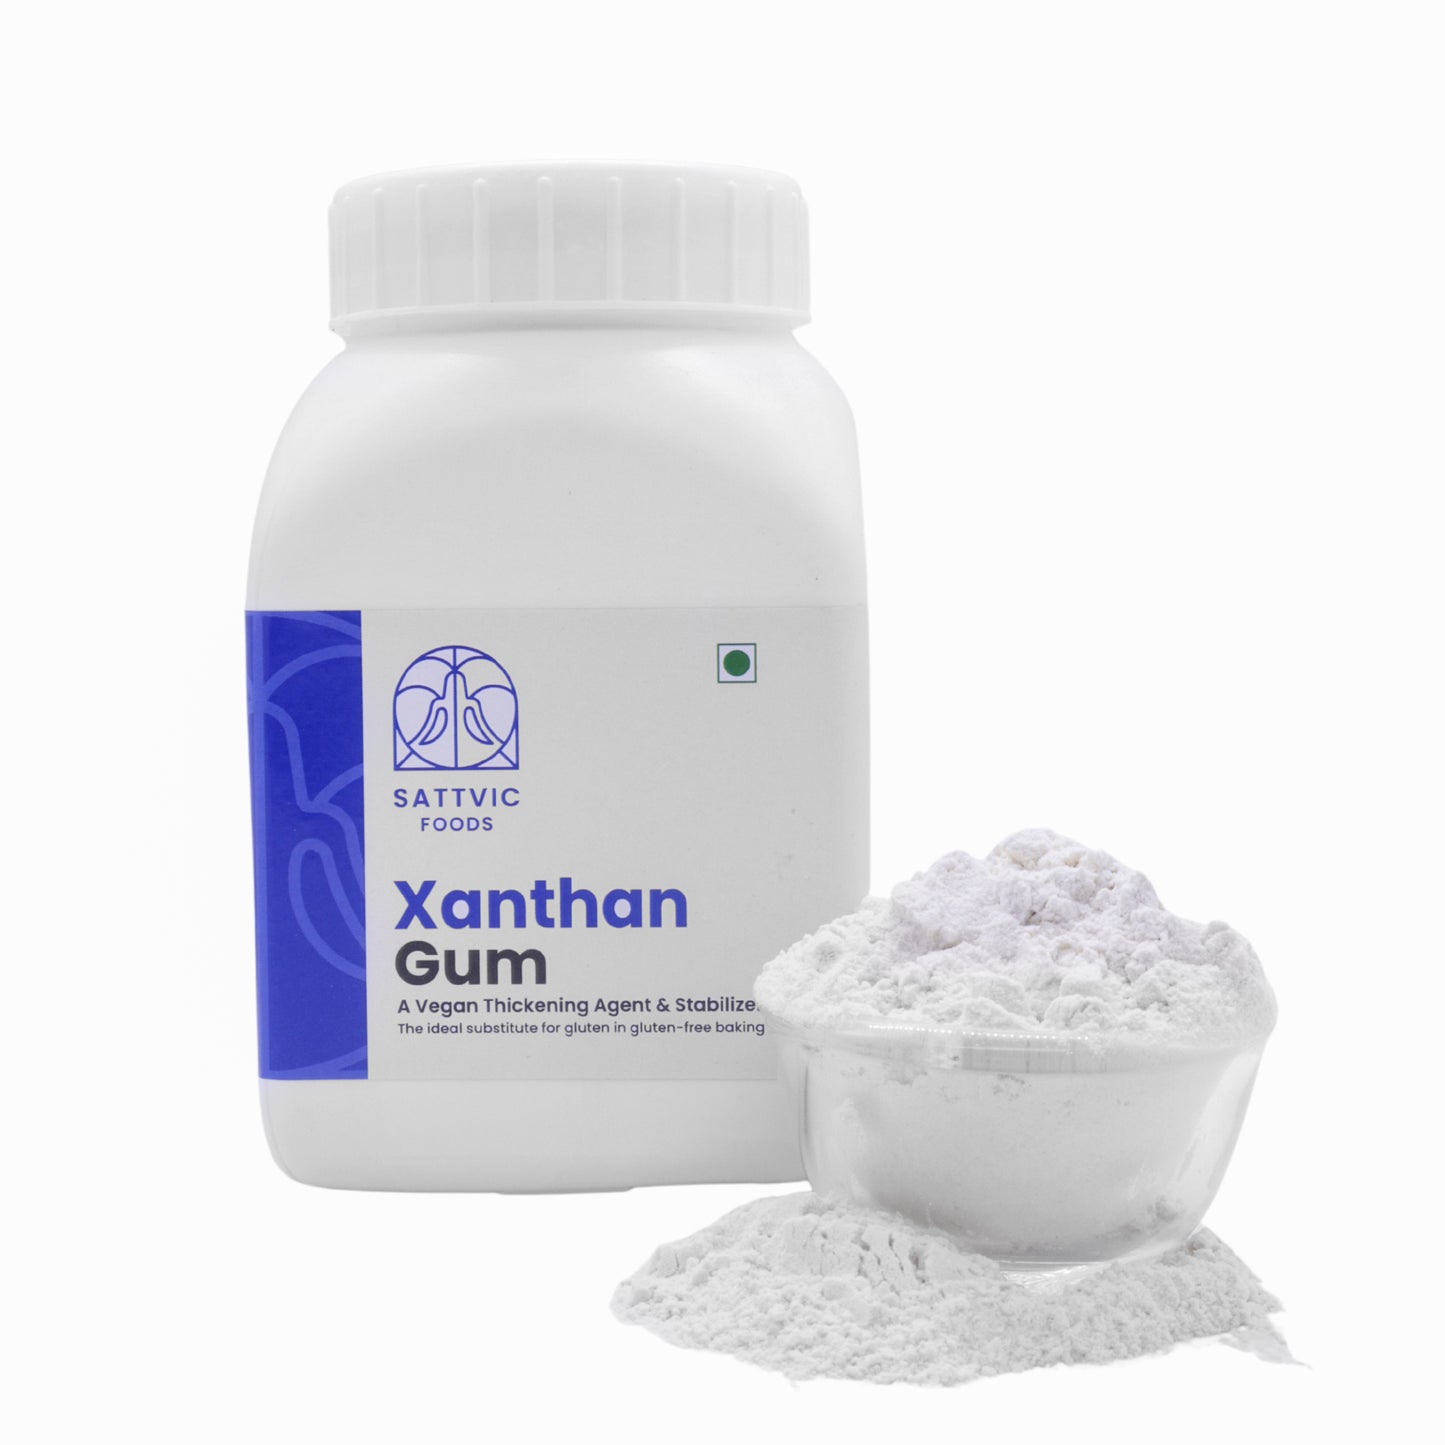 Xanthan Gum (Gluten-free/Vegan thickening)